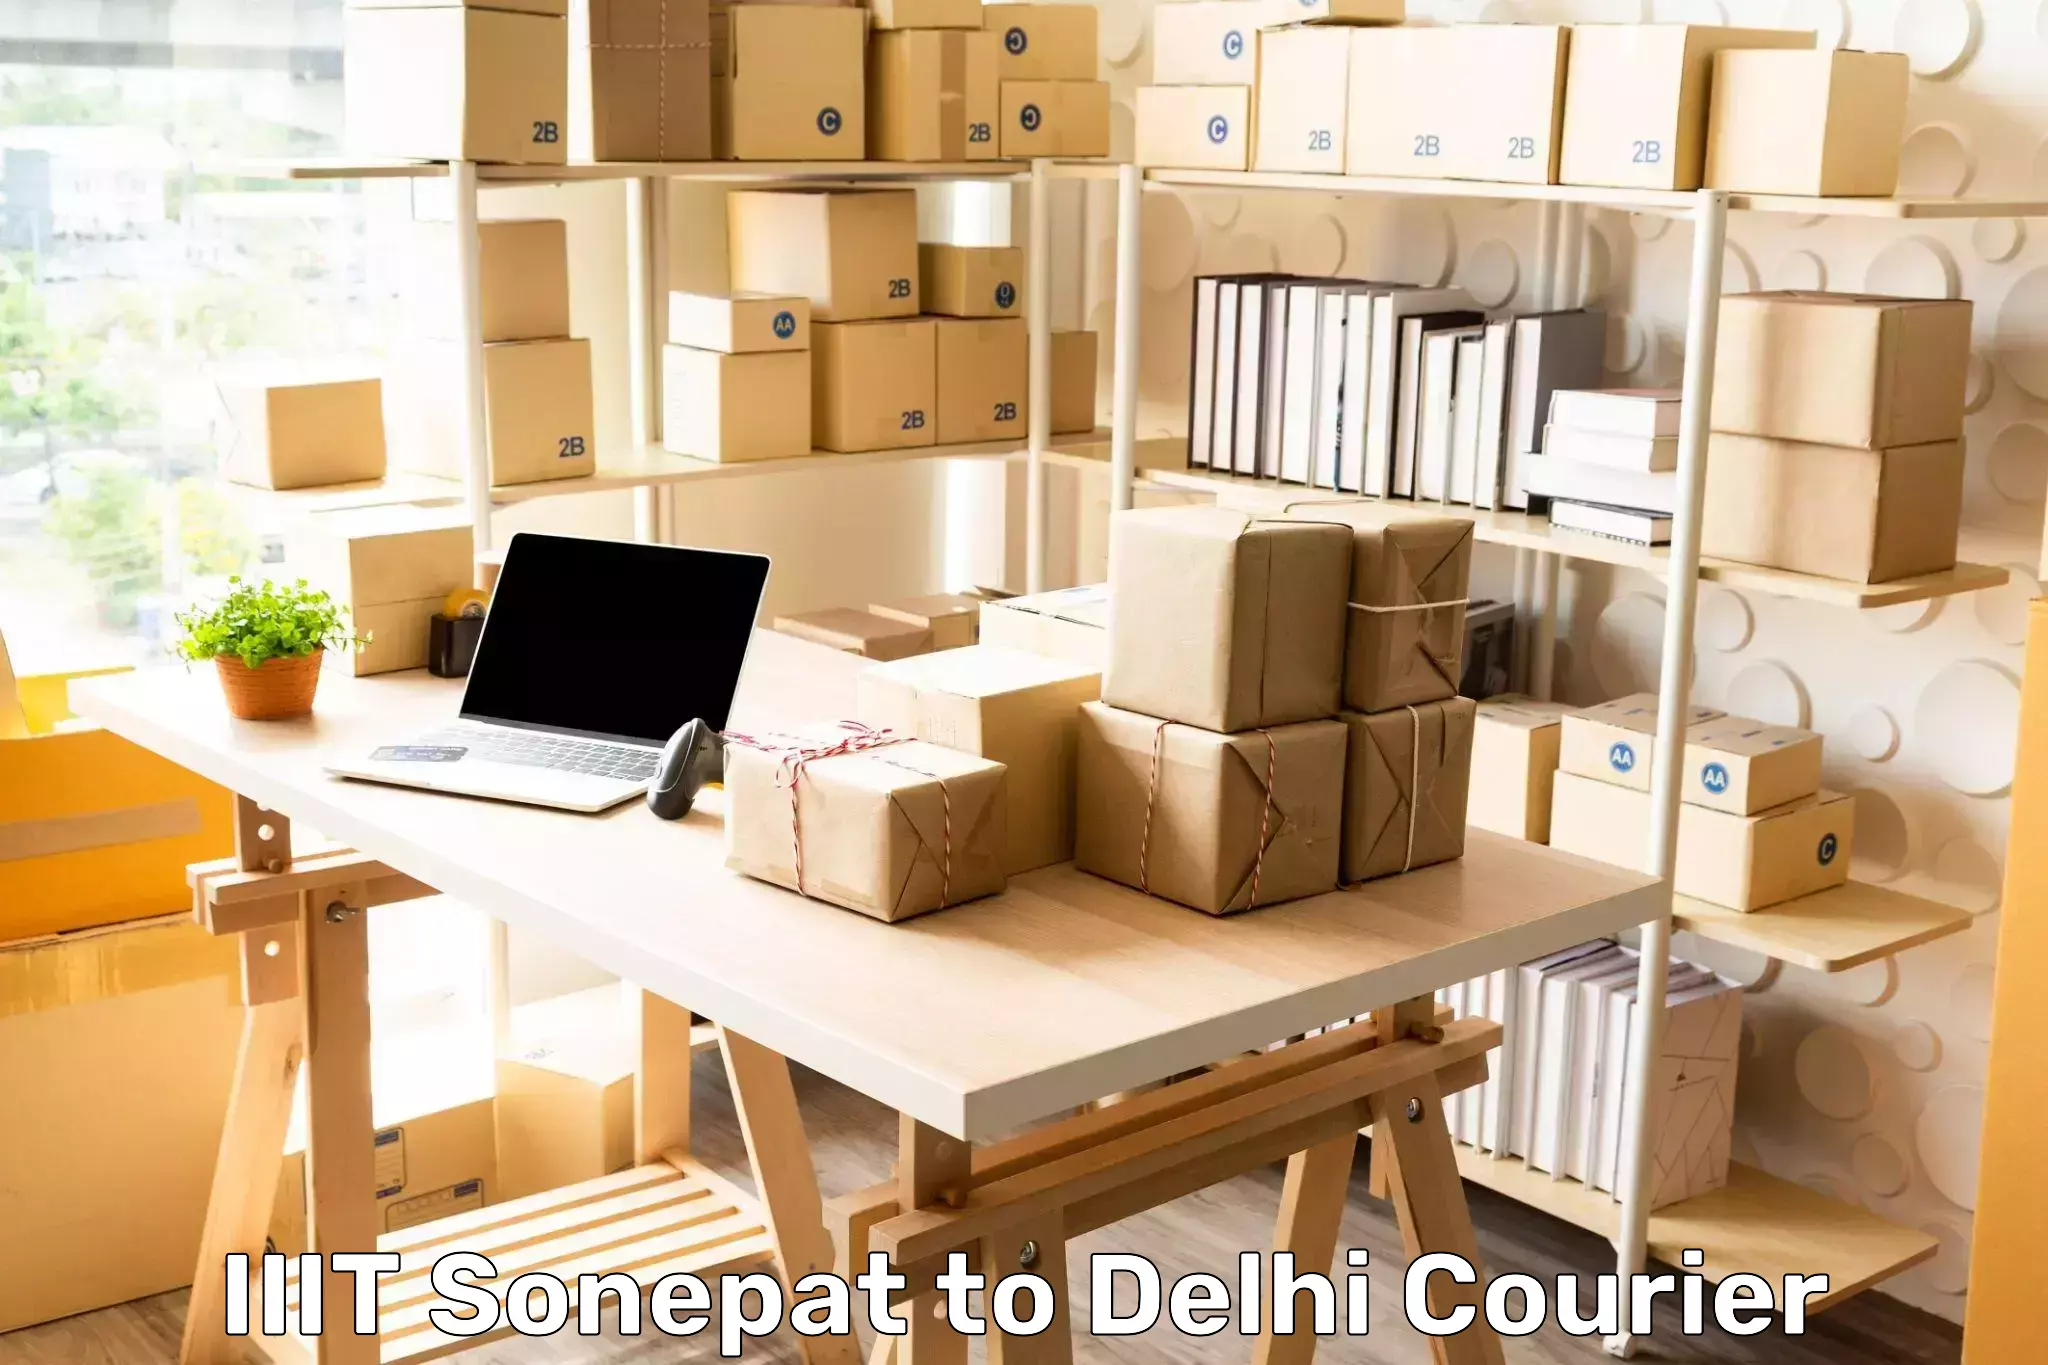 Comprehensive delivery network IIIT Sonepat to Ramesh Nagar